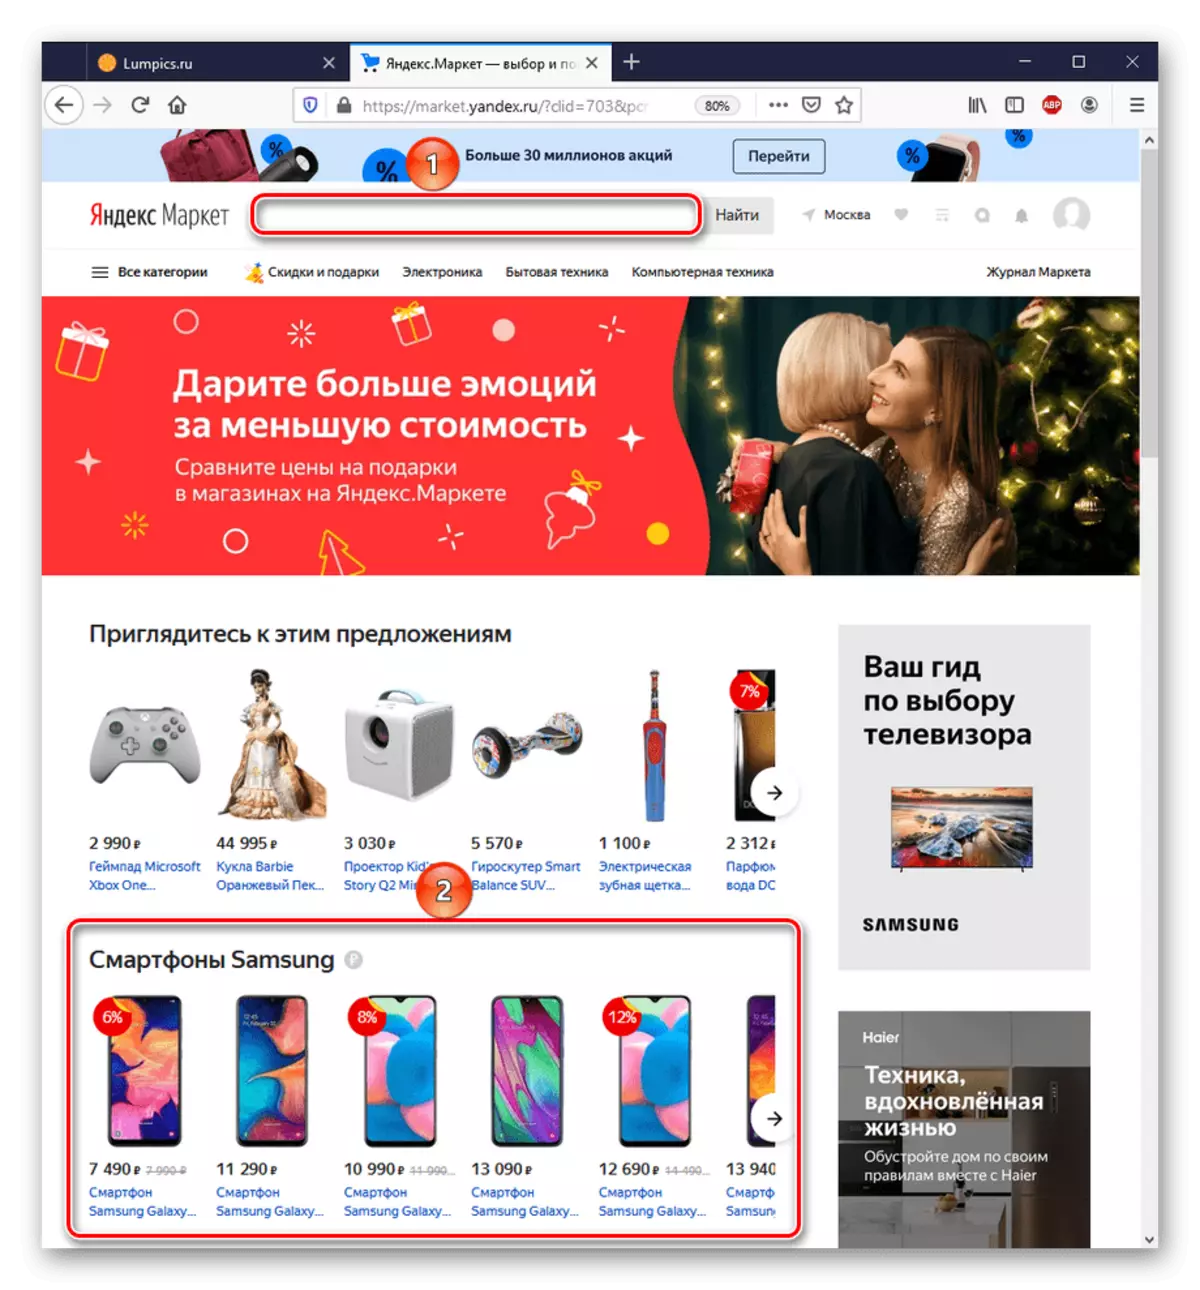 Strona główna Yandex.market.